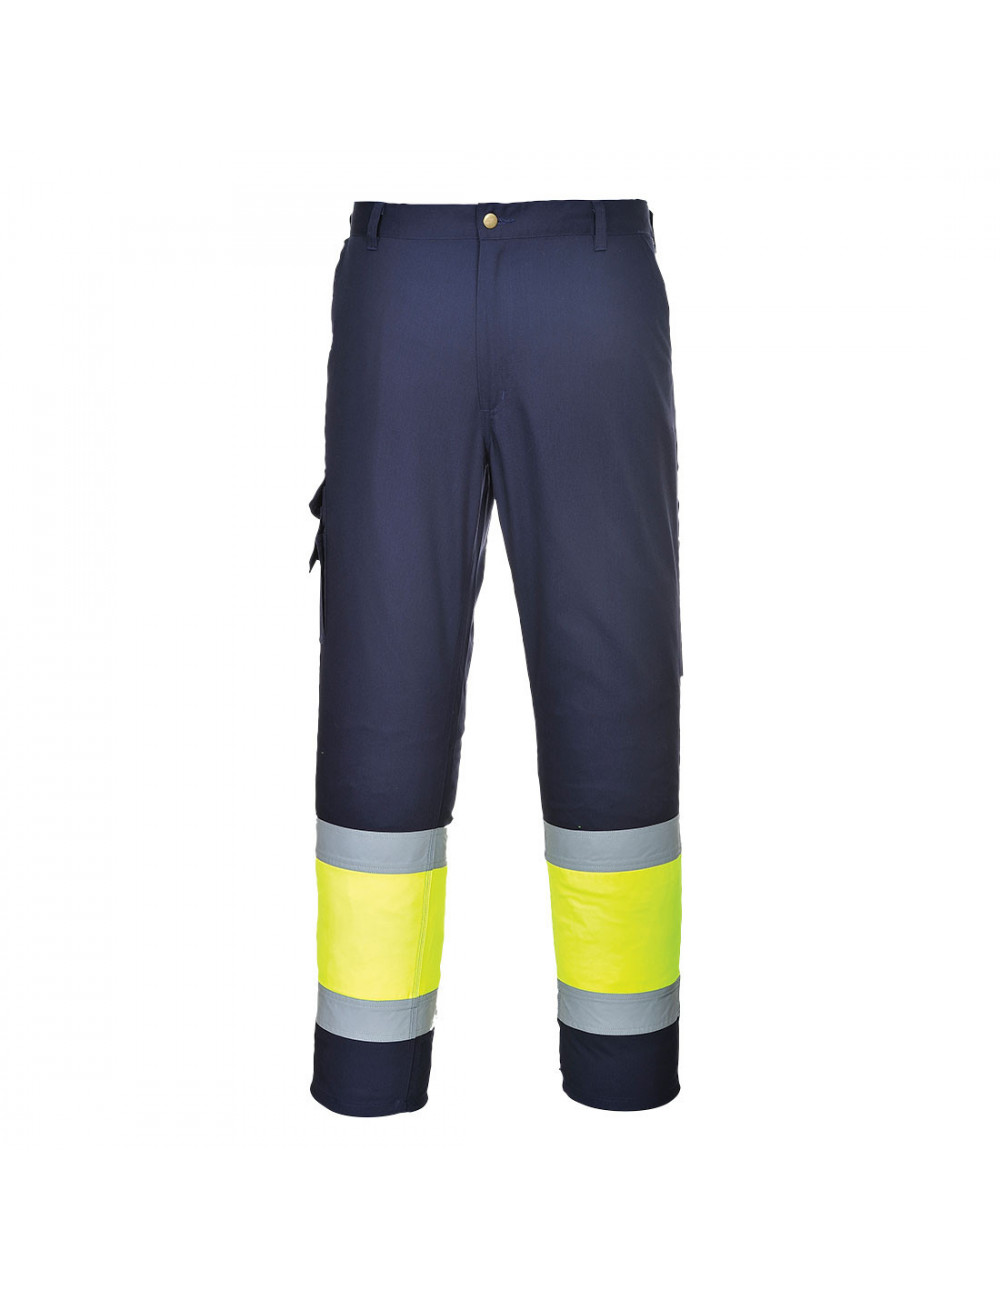 Spodnie bojówki dwukolorowe z elementem odblaskowym żółto/granatowy tall Portwest